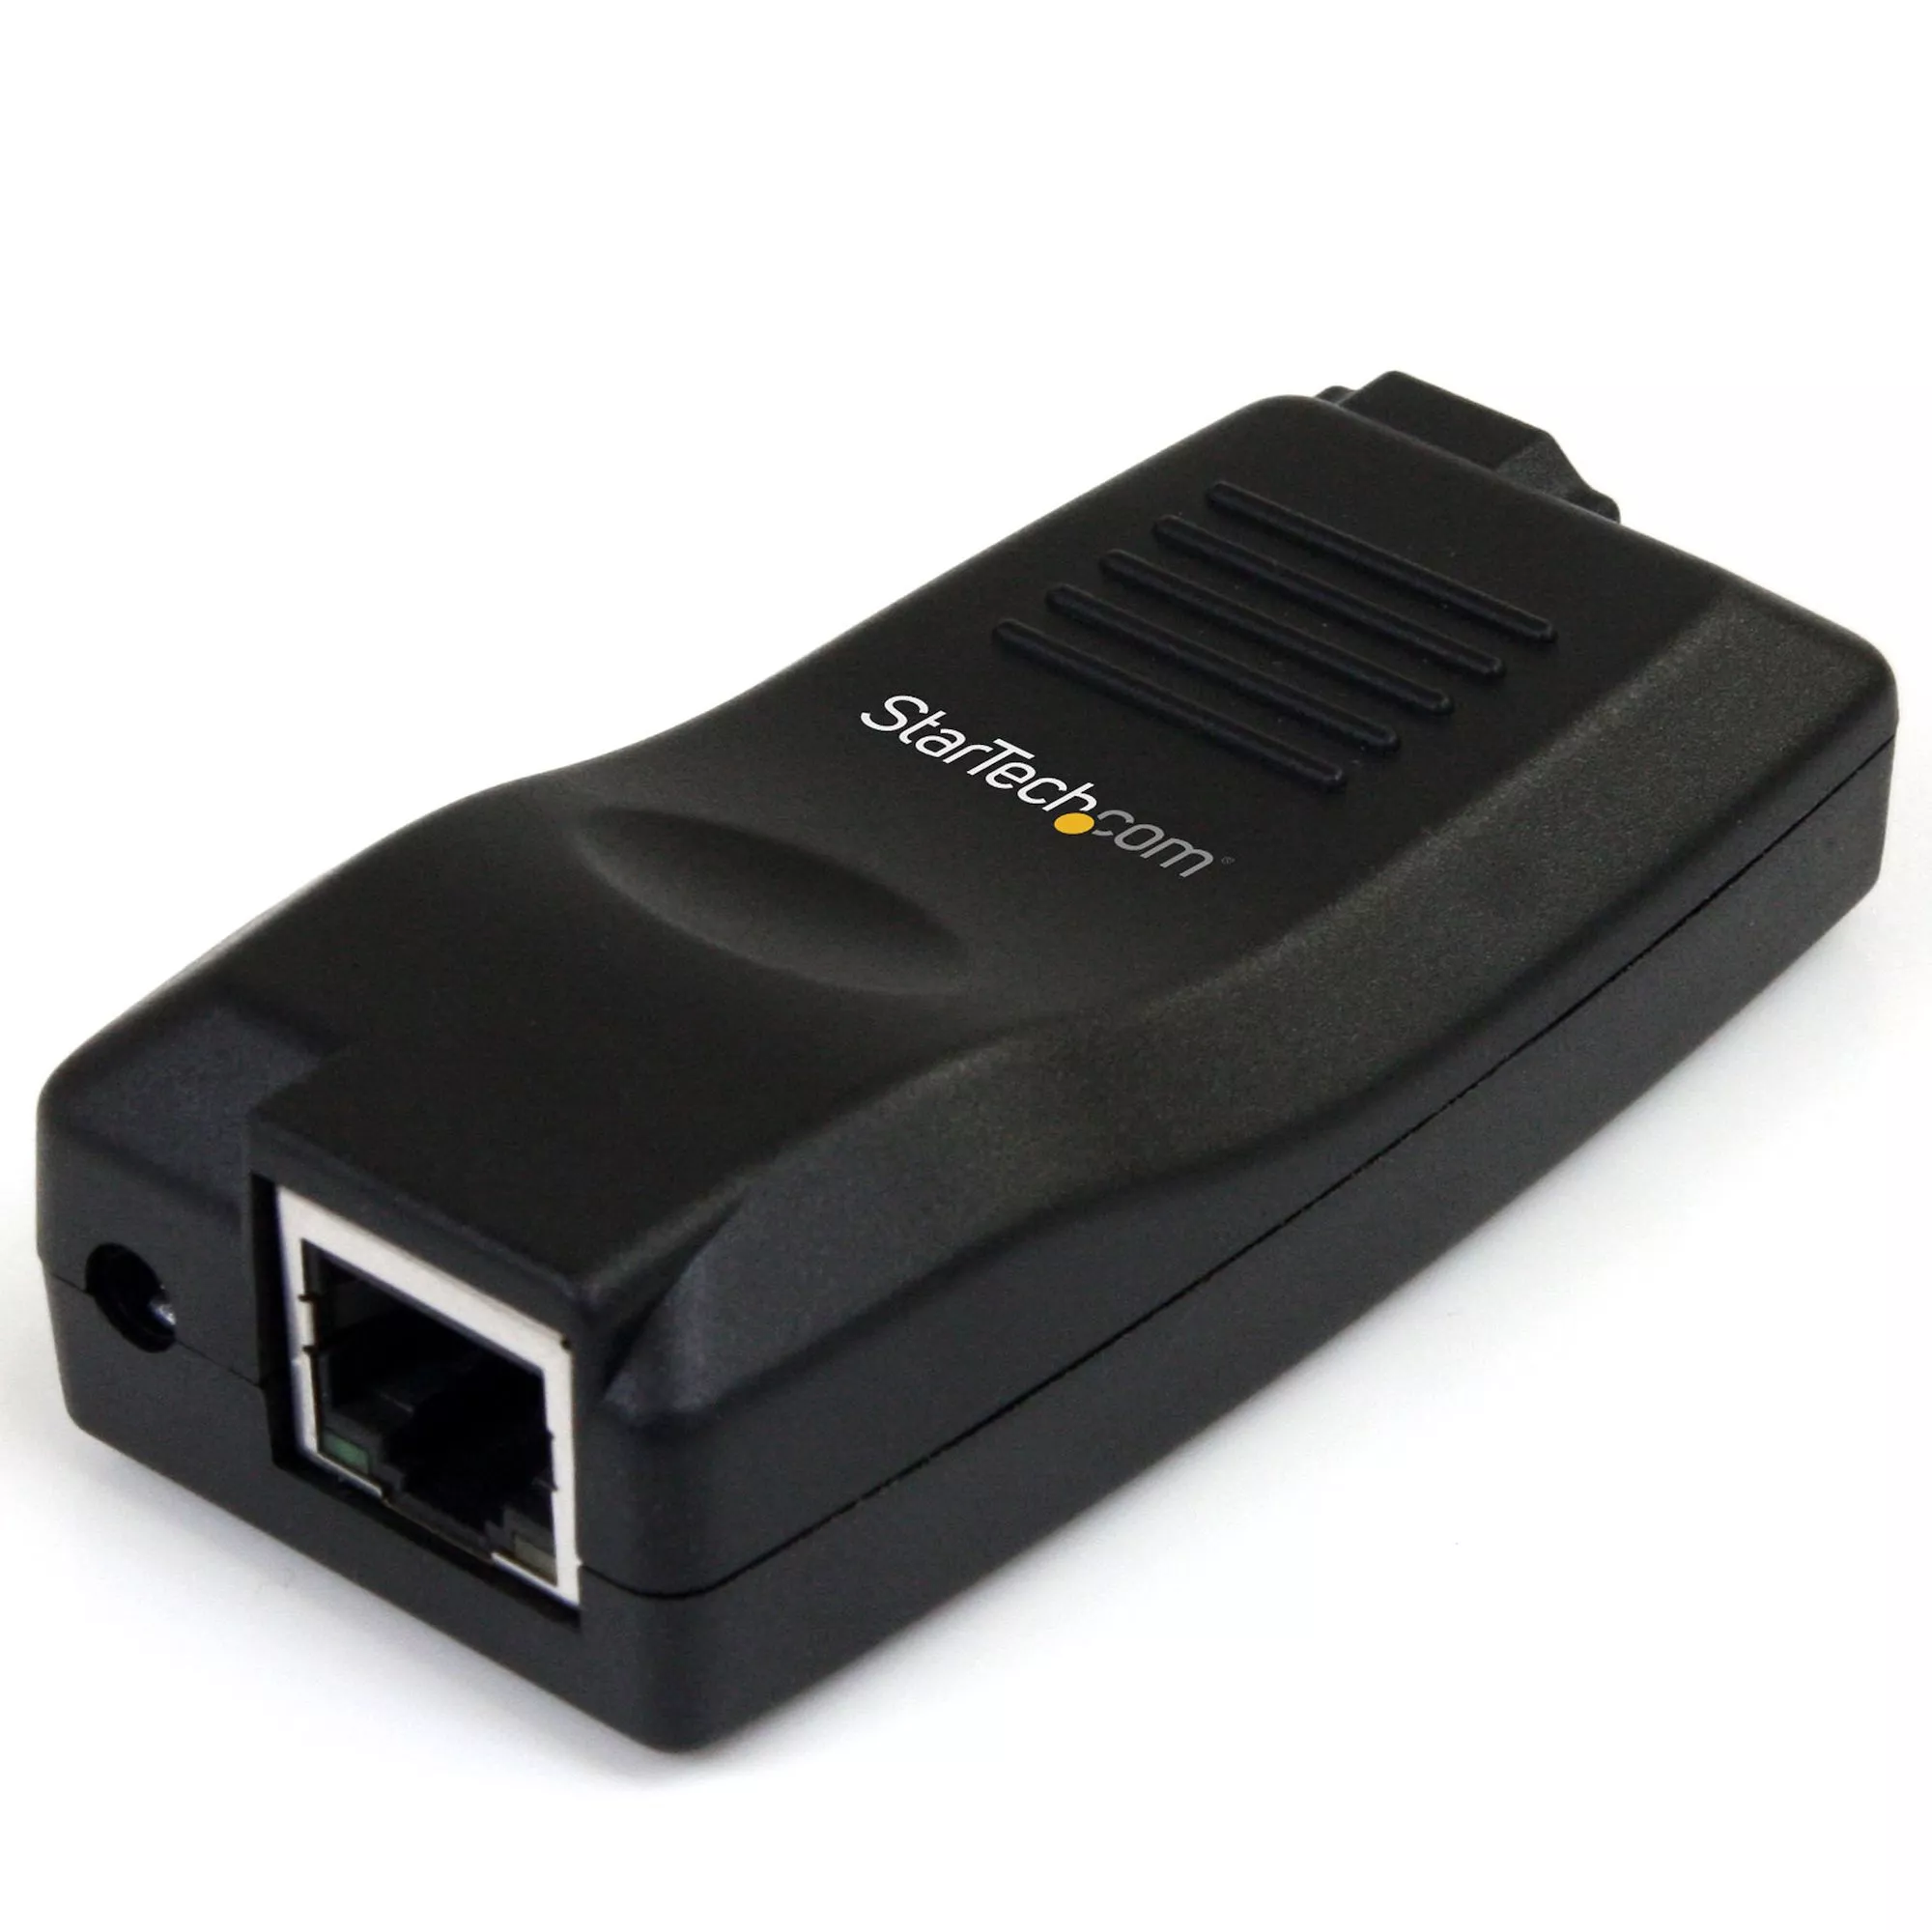 Achat StarTech.com Serveur de périphériques USB sur IP Gigabit - 0065030842419